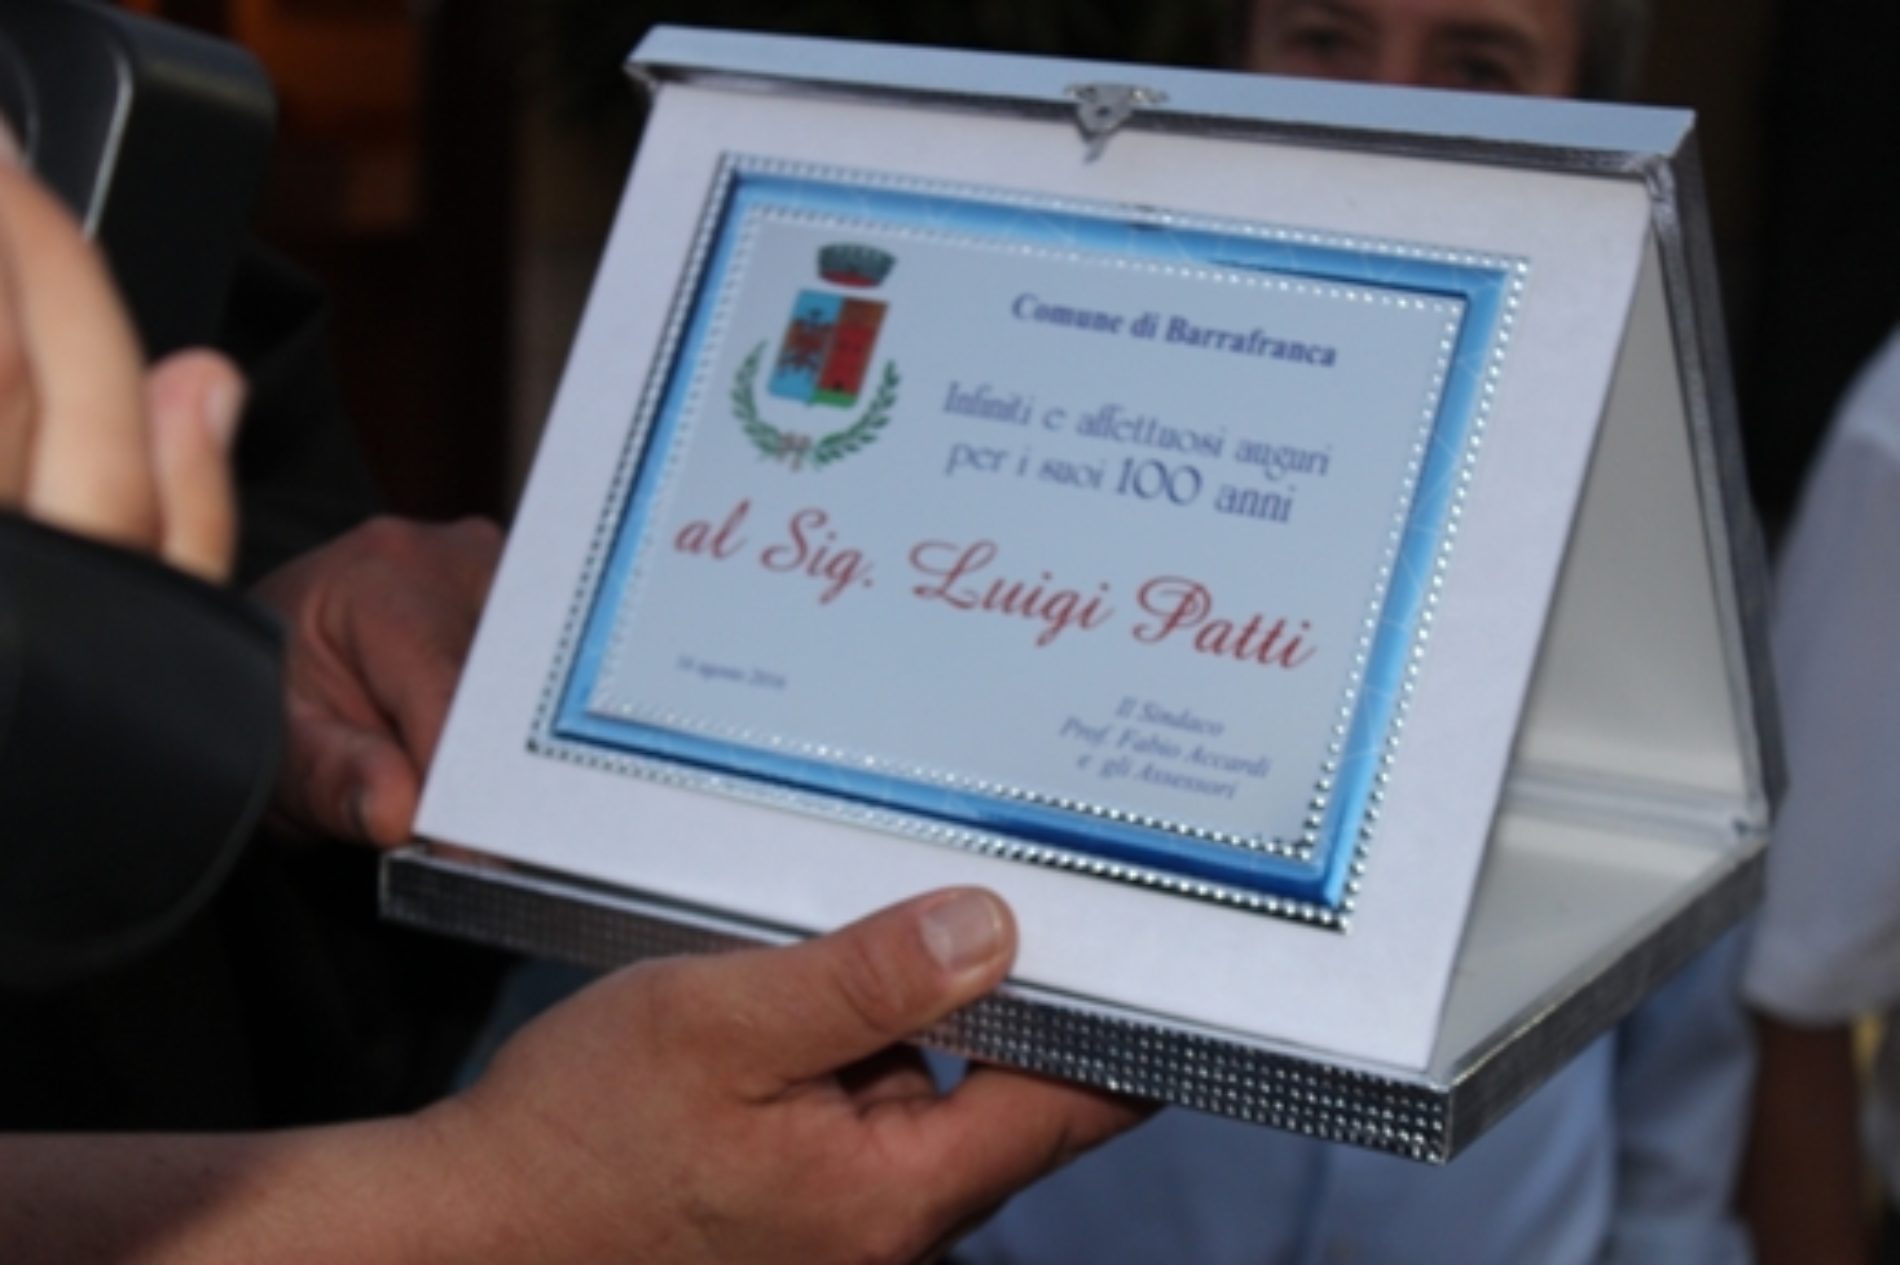 Festa per Luigi Patti che ha soffiato 100 candeline: un secolo di ricordi tra sofferenze e gioie